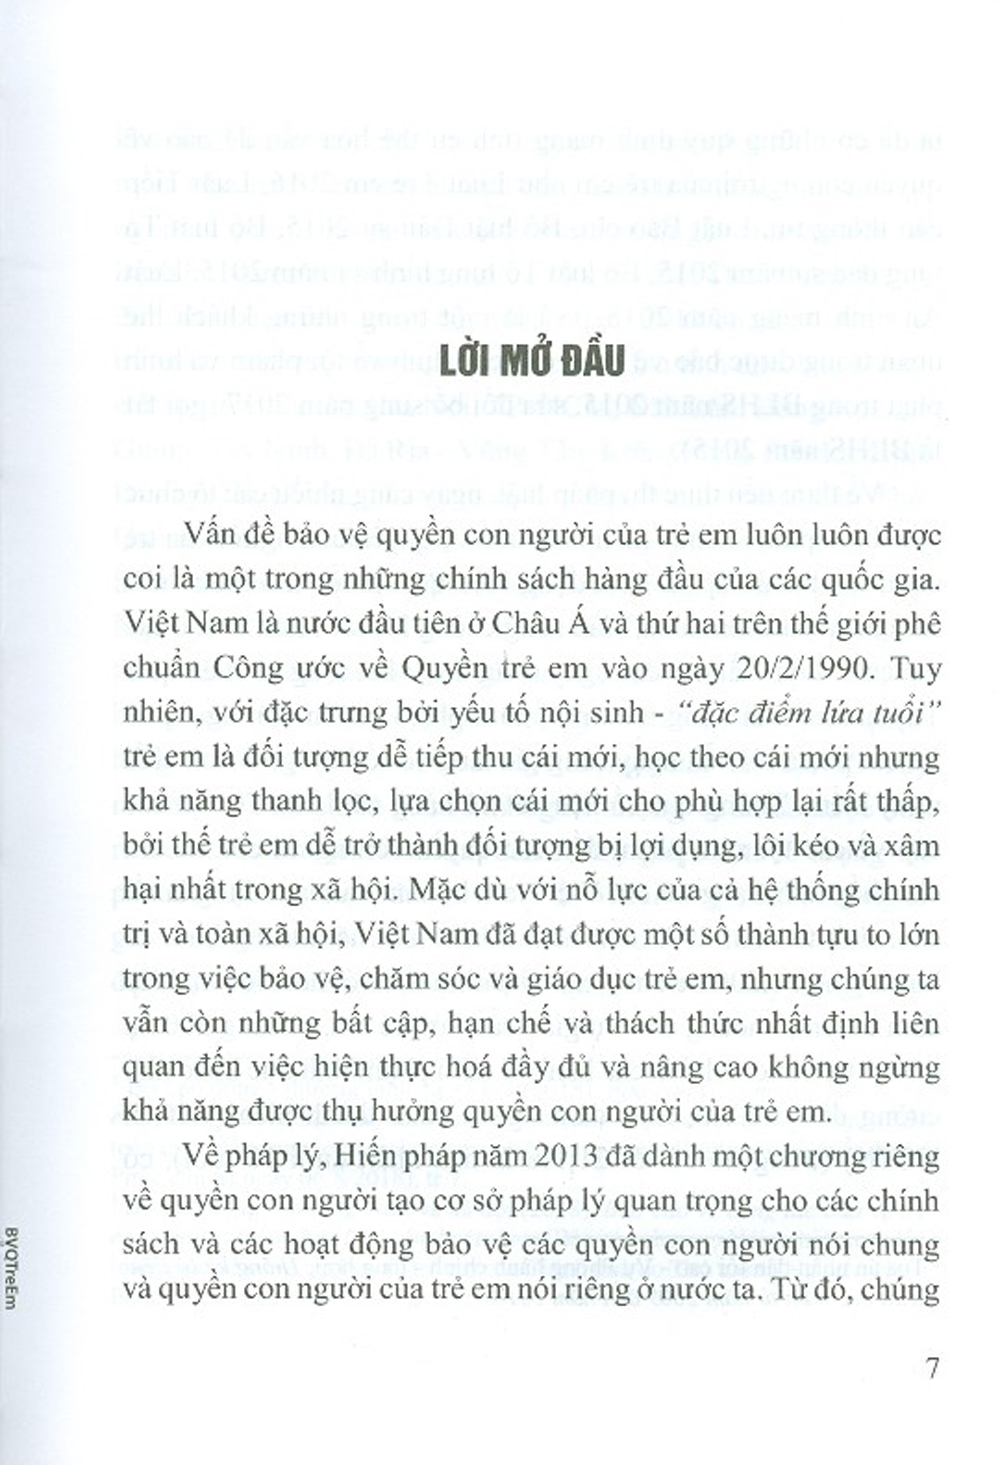 Bảo Vệ Quyền Con Người Của Trẻ Em Bằng Pháp Luật Hình Sự Việt Nam (Sách Chuyên Khảo)